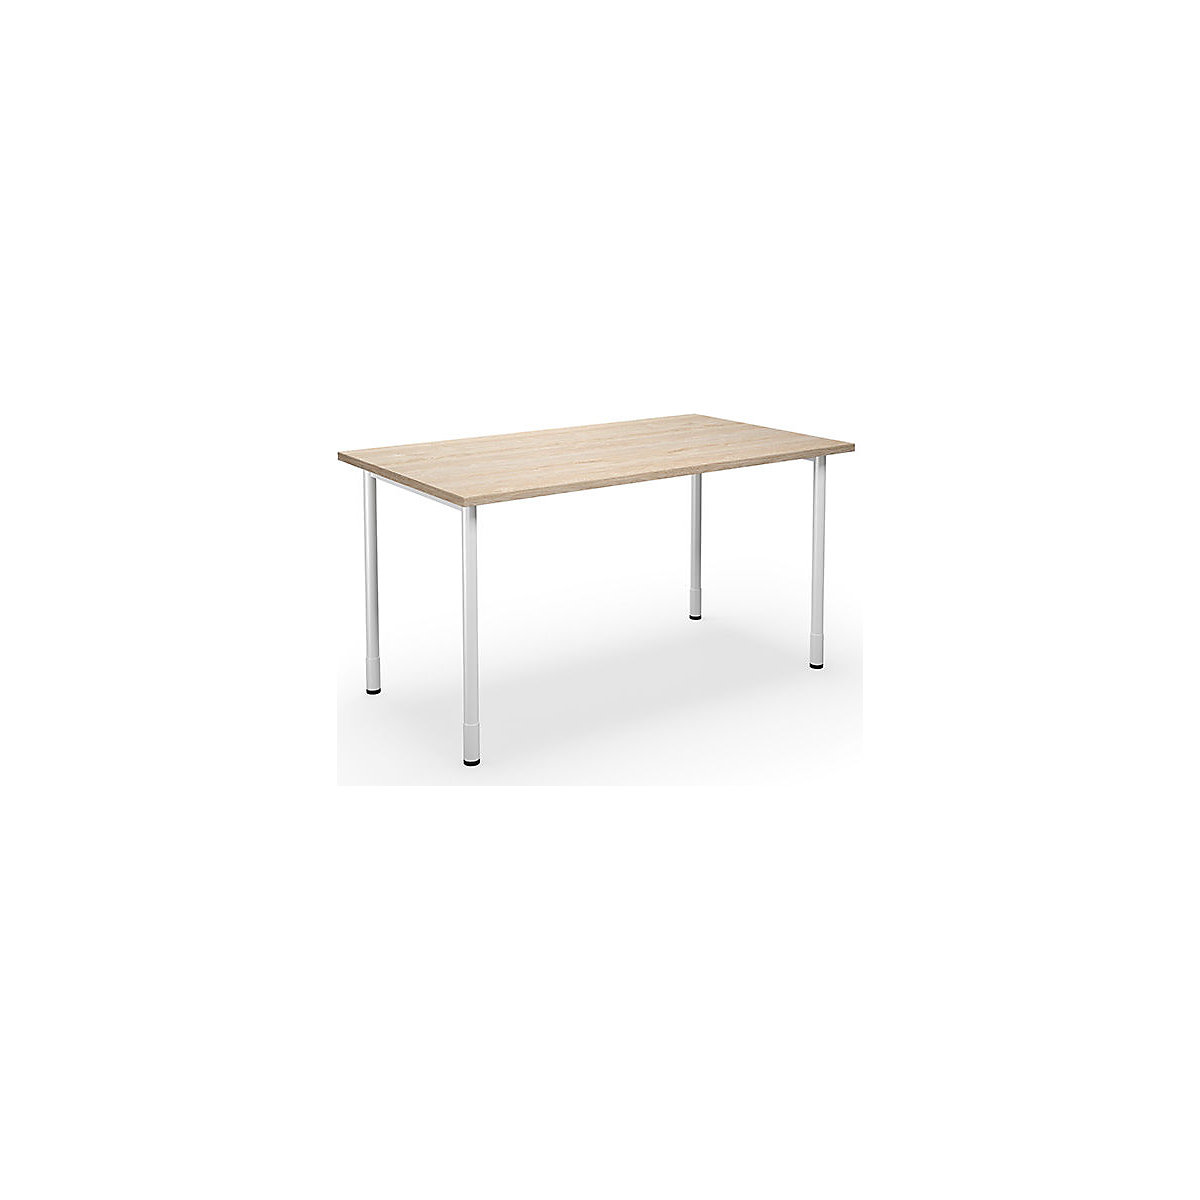 DUO-C multi-purpose desk, straight tabletop, WxD 1400 x 800 mm, oak, oak-7